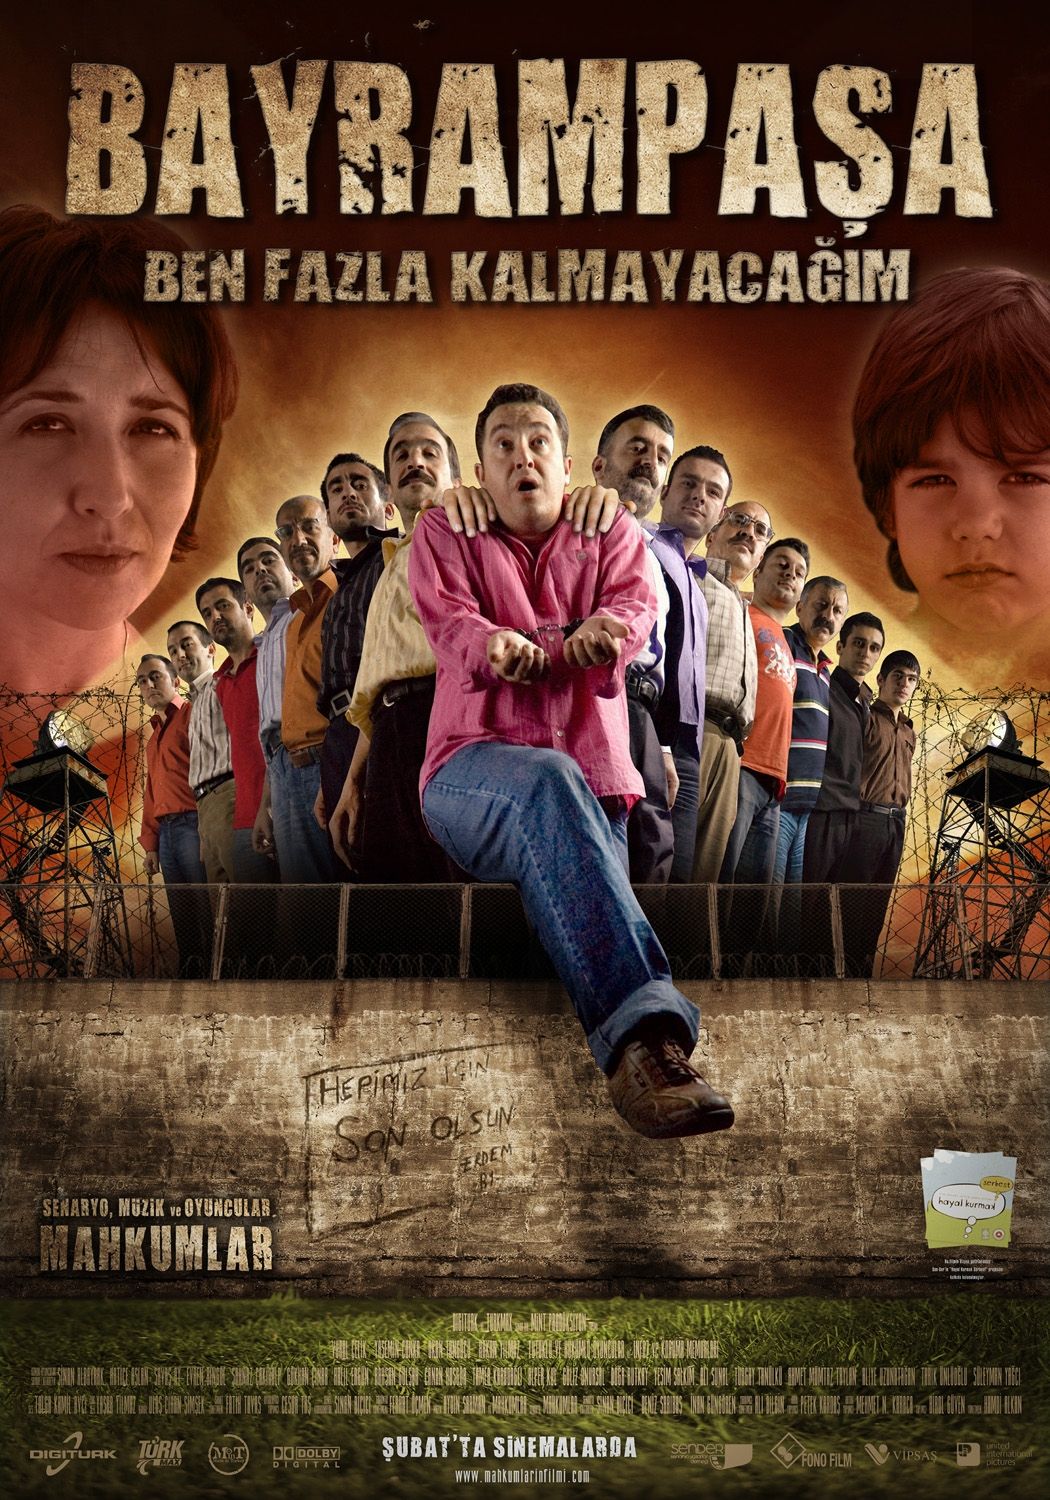 Extra Large Movie Poster Image for Bayrampasa: Ben fazla kalmayacagim (#7 of 7)